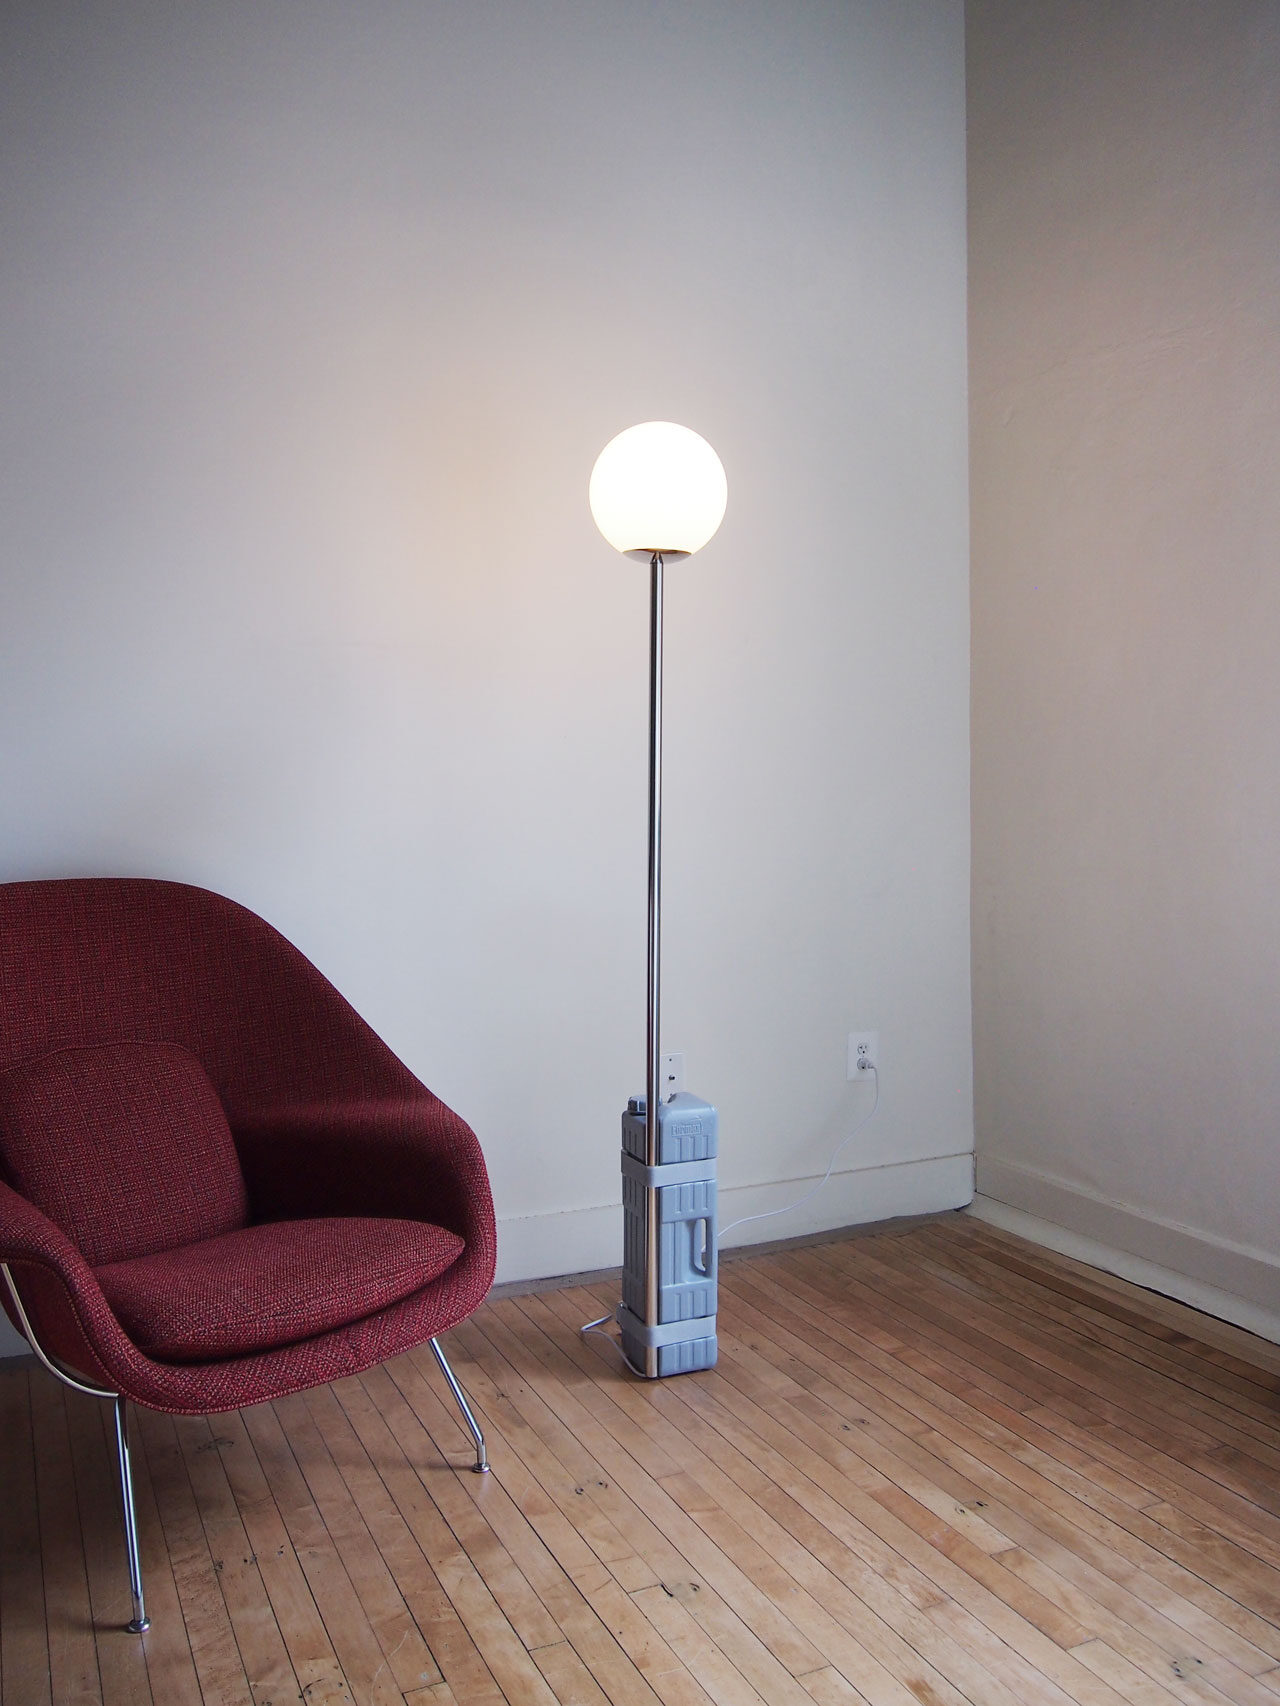 DIY floor lamp designed by Aandersson